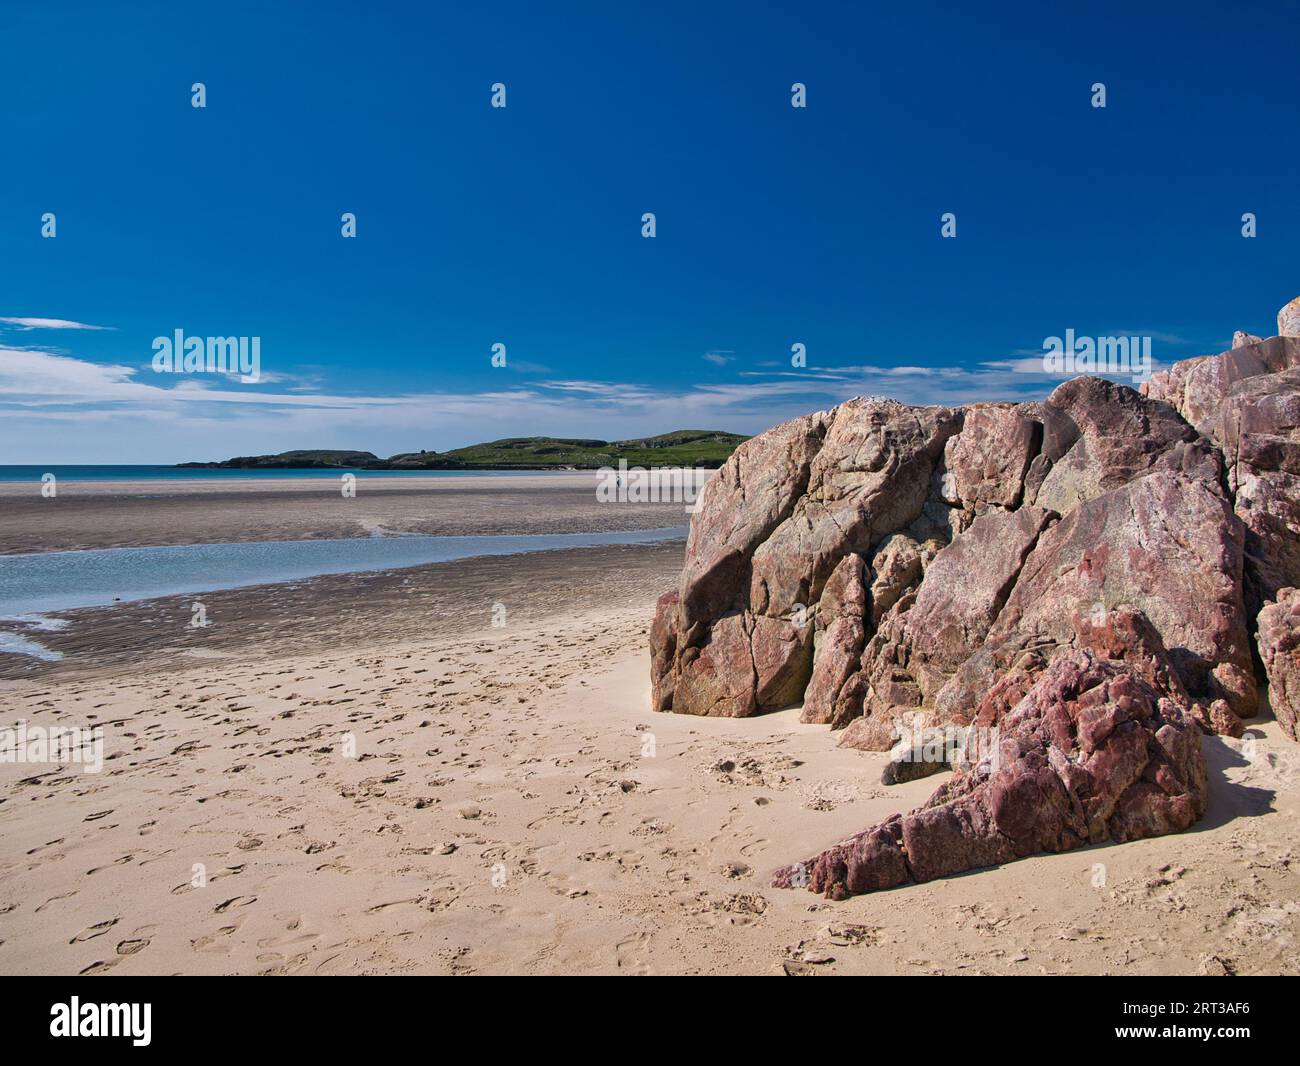 Una sola, lontana, non identificata persona sulle Ardroil Sands (Uig Sands), altrimenti deserte, sull'isola di Lewis nelle Ebridi esterne, Scozia, Regno Unito. T Foto Stock